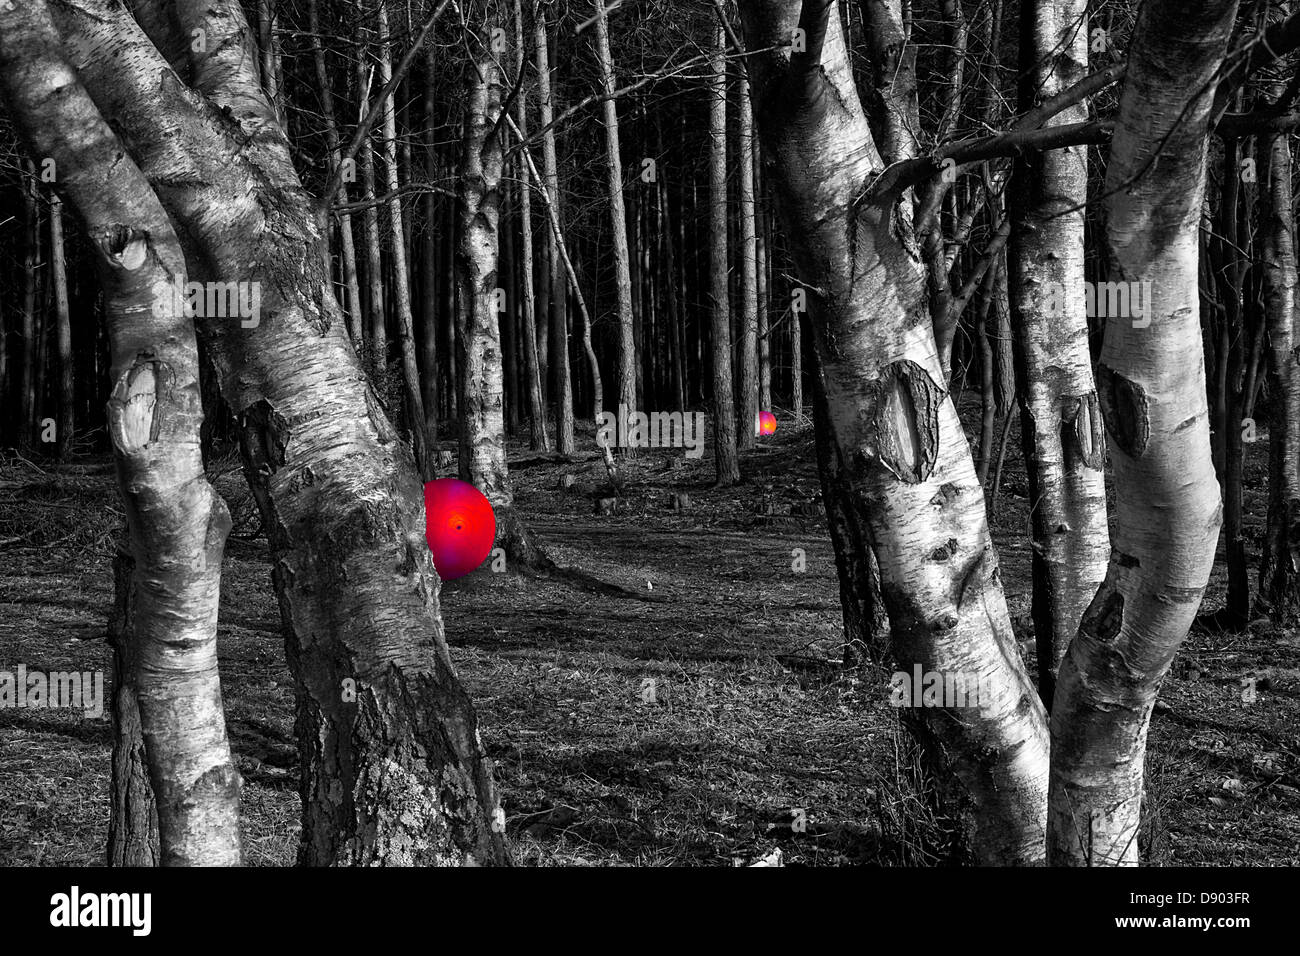 Bola brillante por árboles en el bosque, un místico abstracto concepto significativo Foto de stock